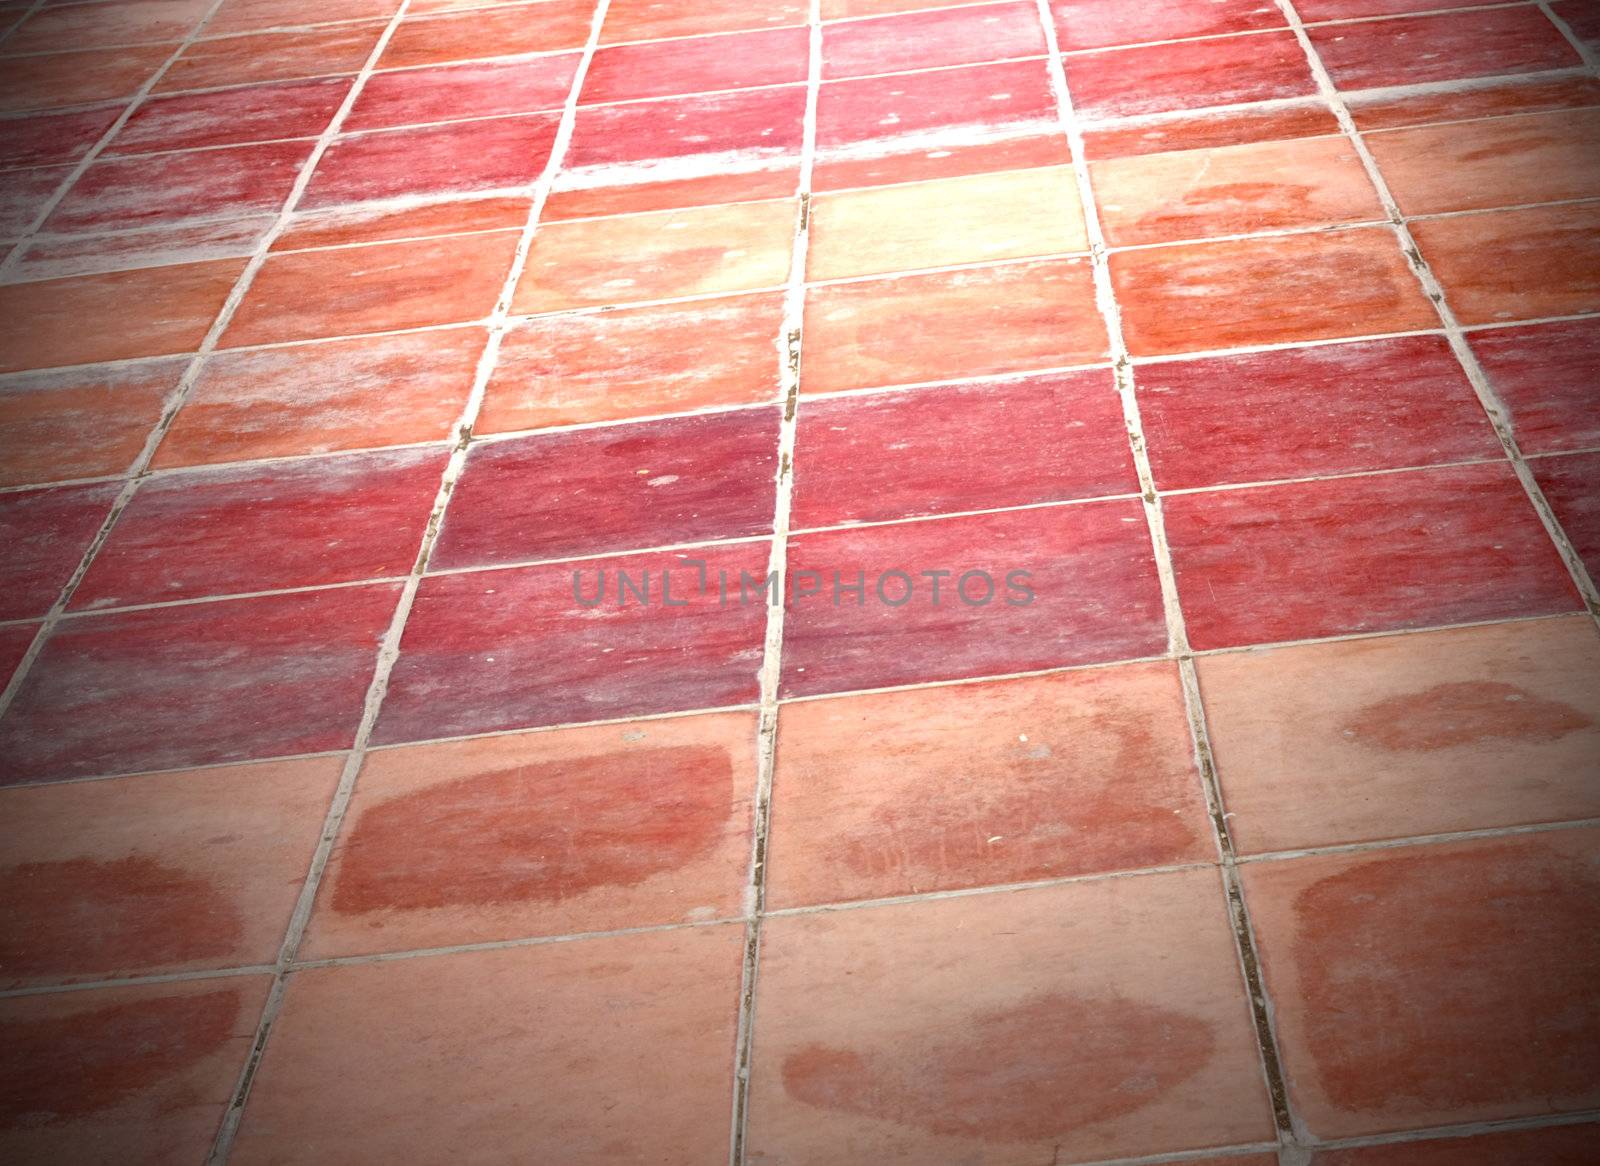 Perspective of Square red tiles floor  by schankz